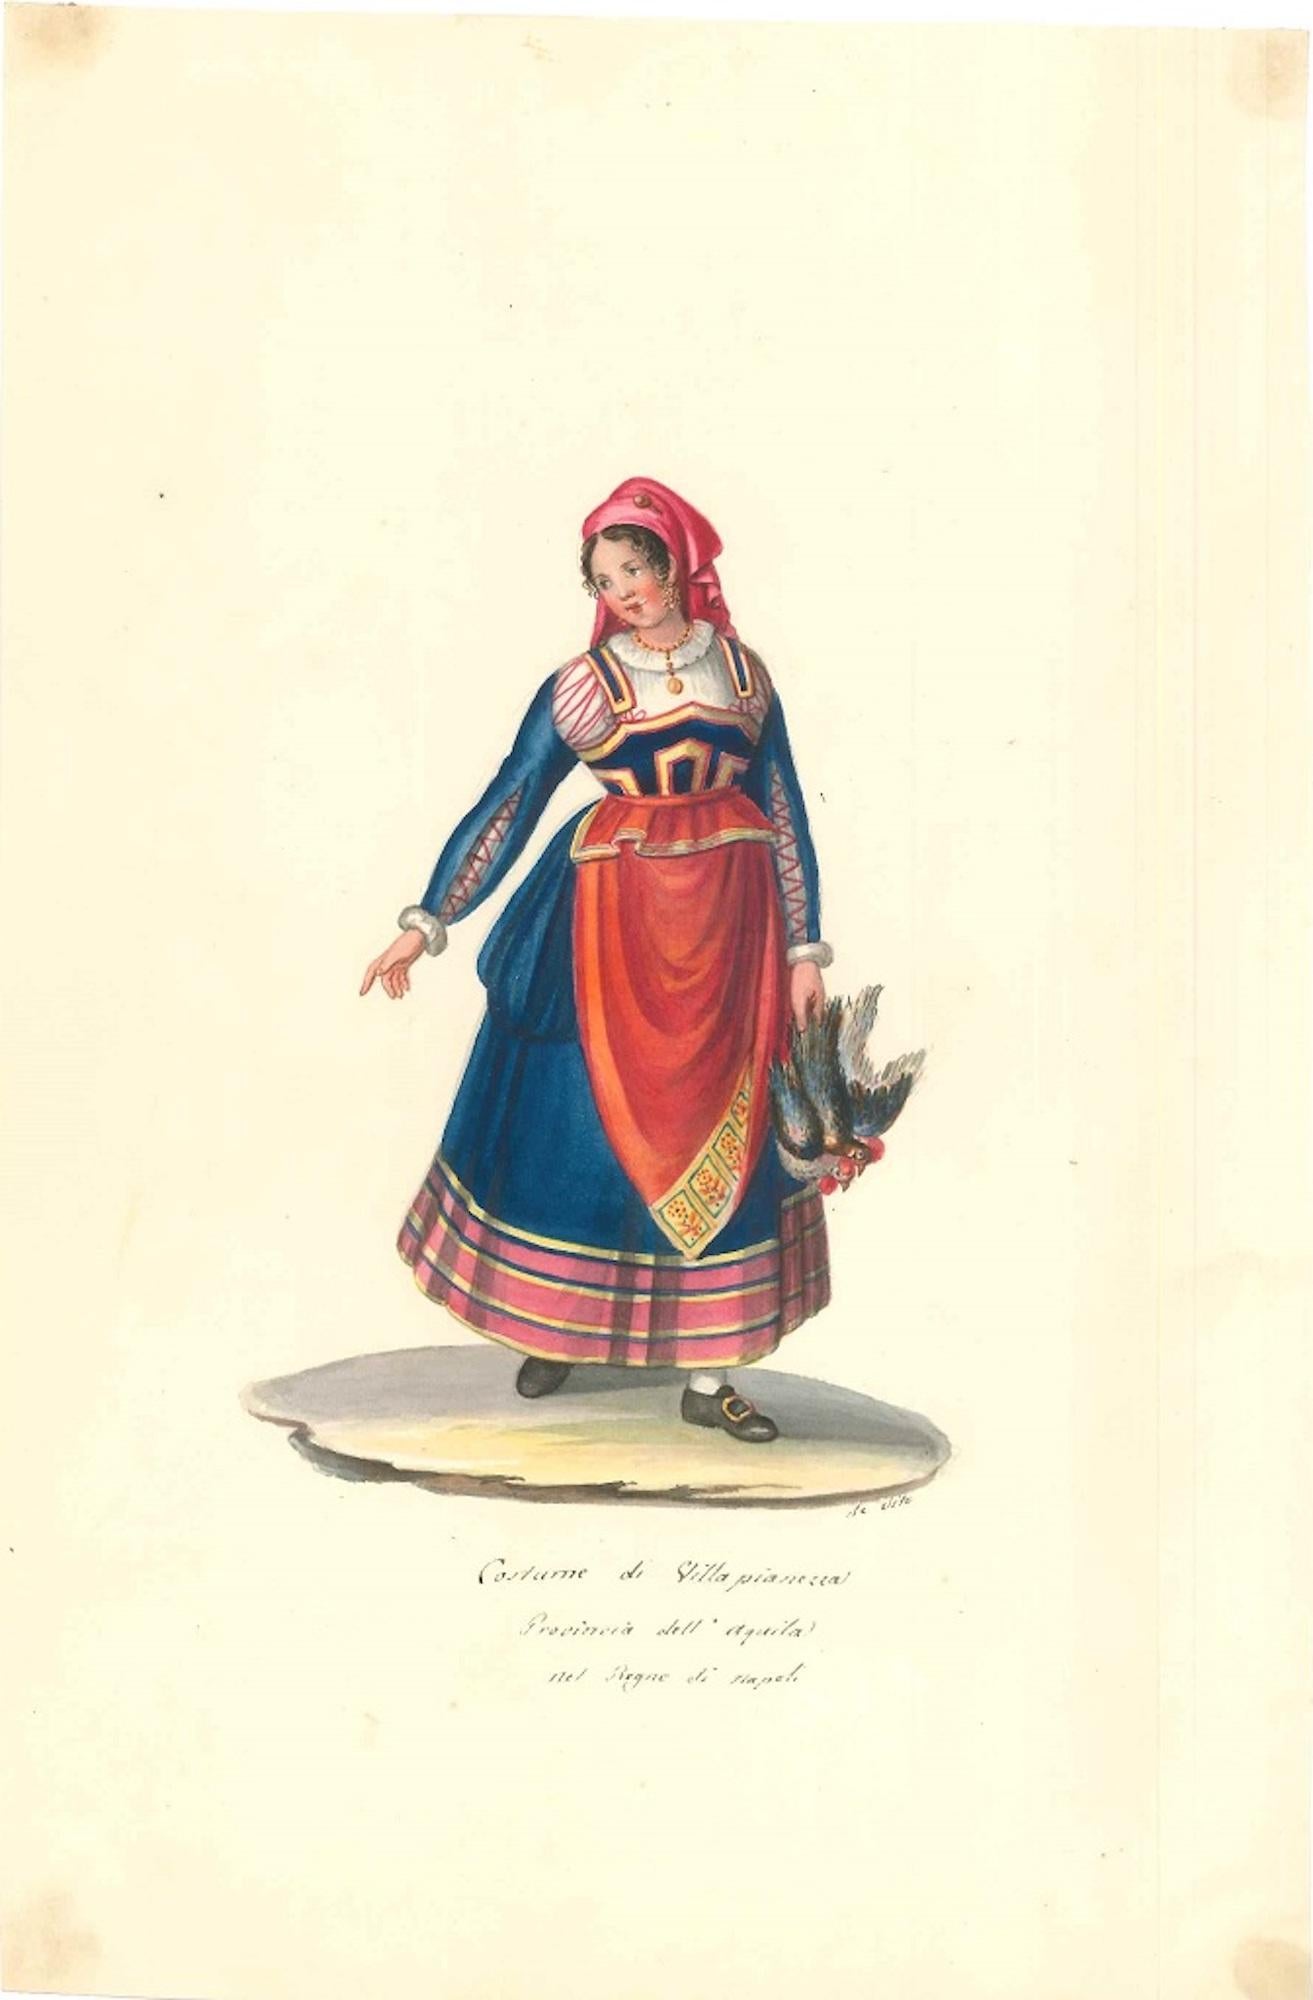 Michela De Vito Portrait - Costume di Villa Pianezza - Watercolor by M. De Vito - 1820 ca.